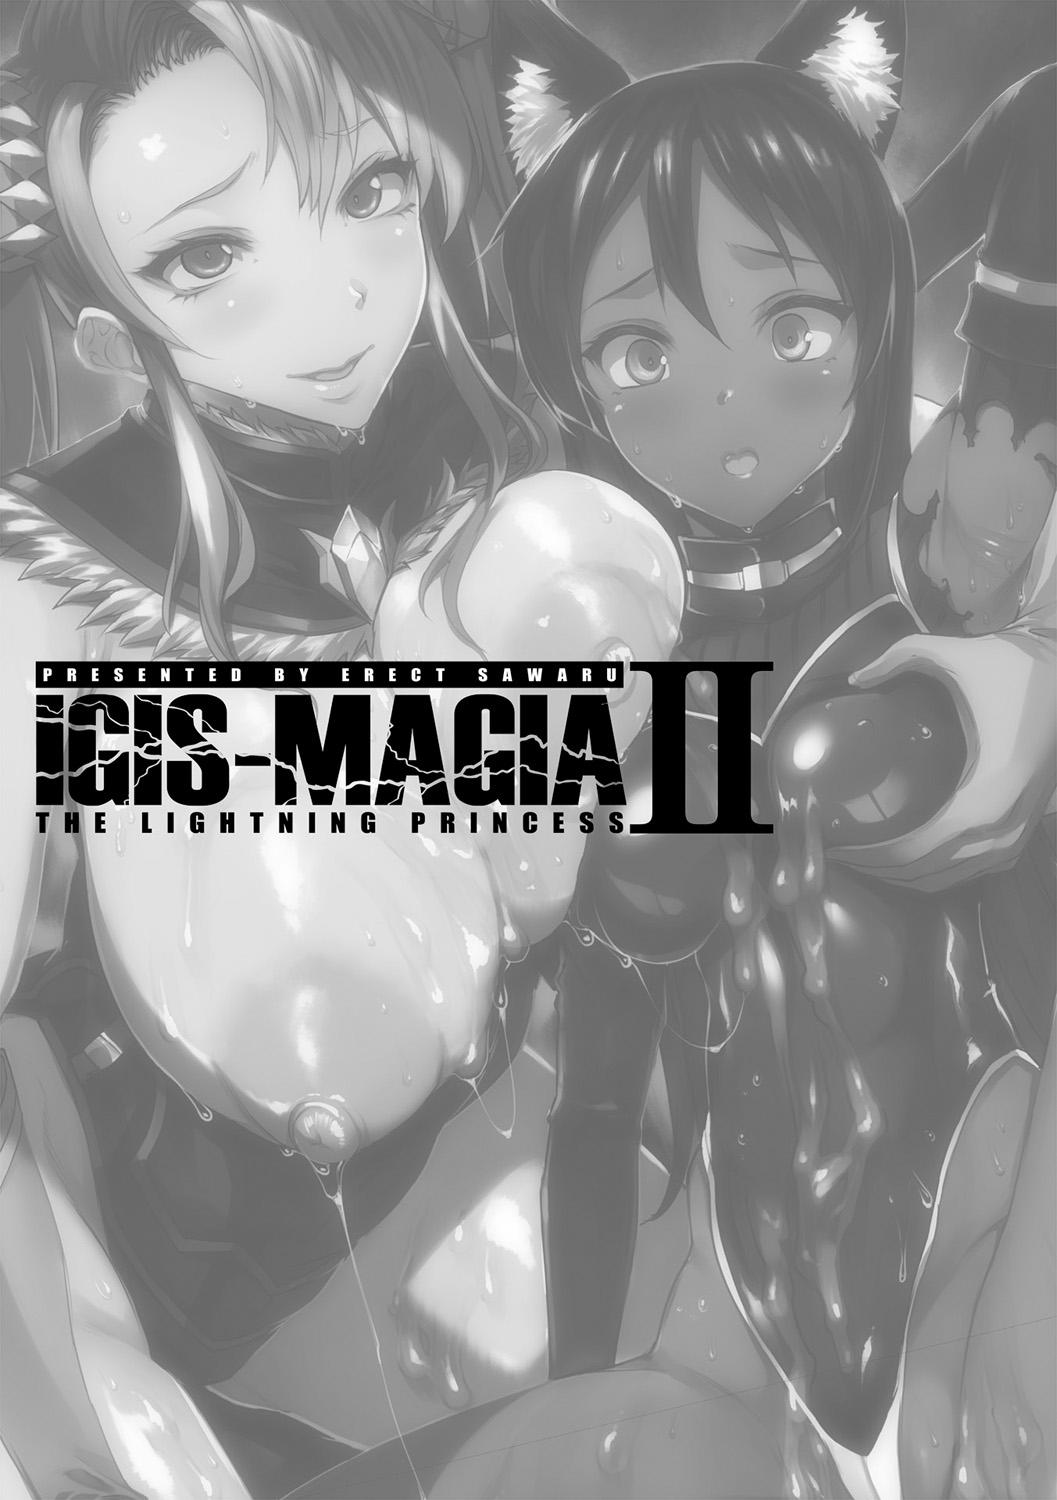 [Erect Sawaru] Raikou Shinki Igis Magia II -PANDRA saga 3rd ignition- + Denshi Shoseki Tokuten Digital Poster [Digital] 6